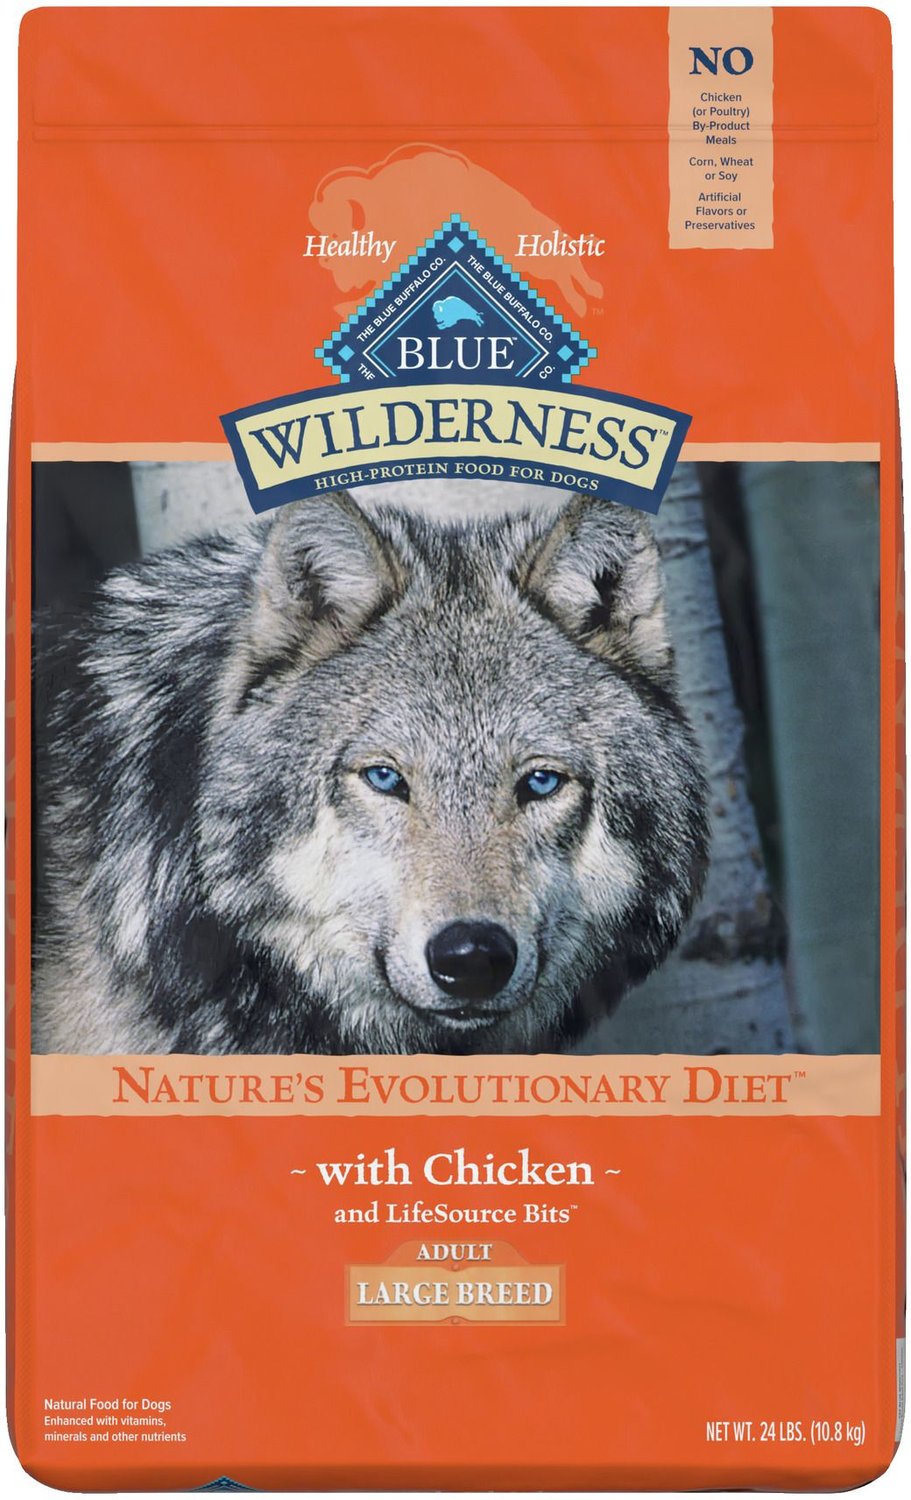 blue buffalo dog food 50 lbs